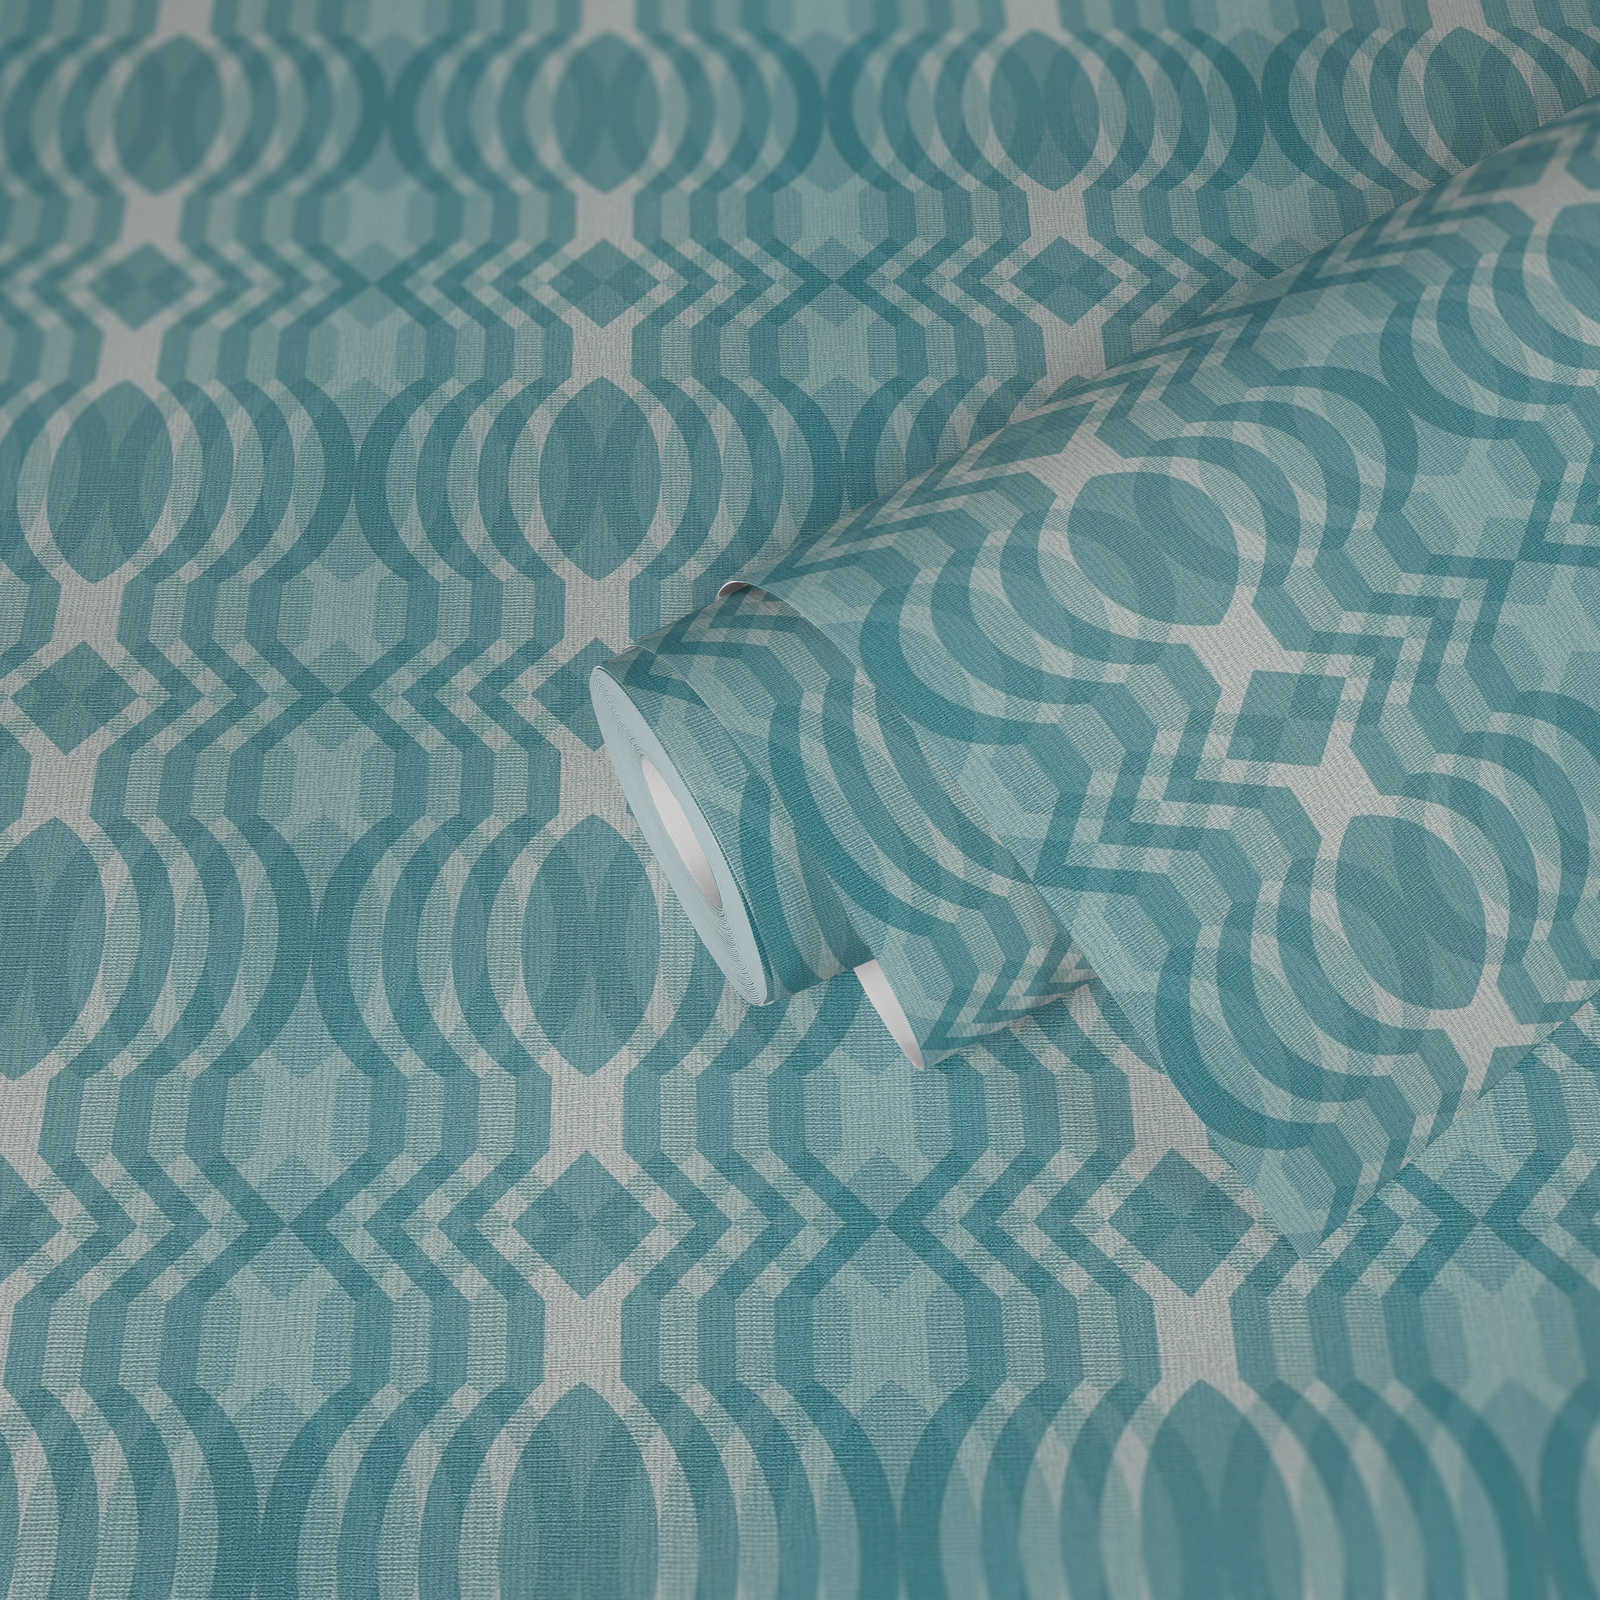             Retro Tapete mit geometrischem Muster – Blau, Creme, Weiß
        